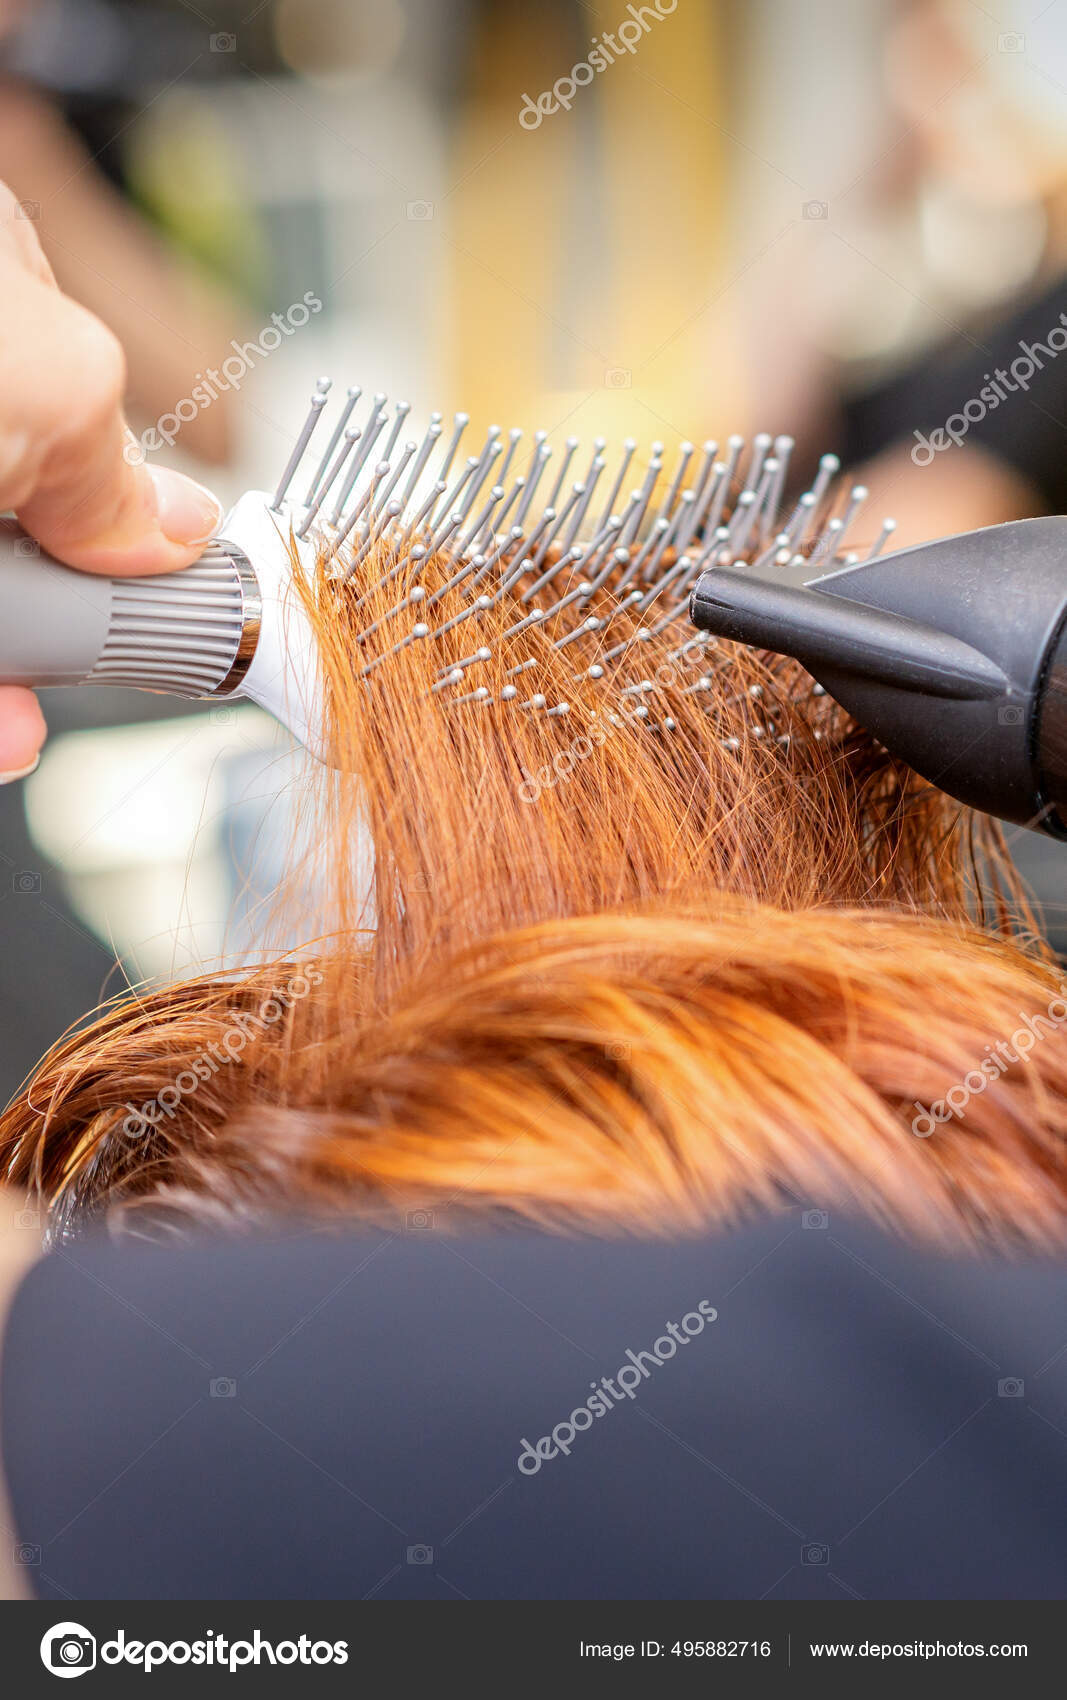 Salão. close-up de um corte de cabelo feminino, mestre em uma